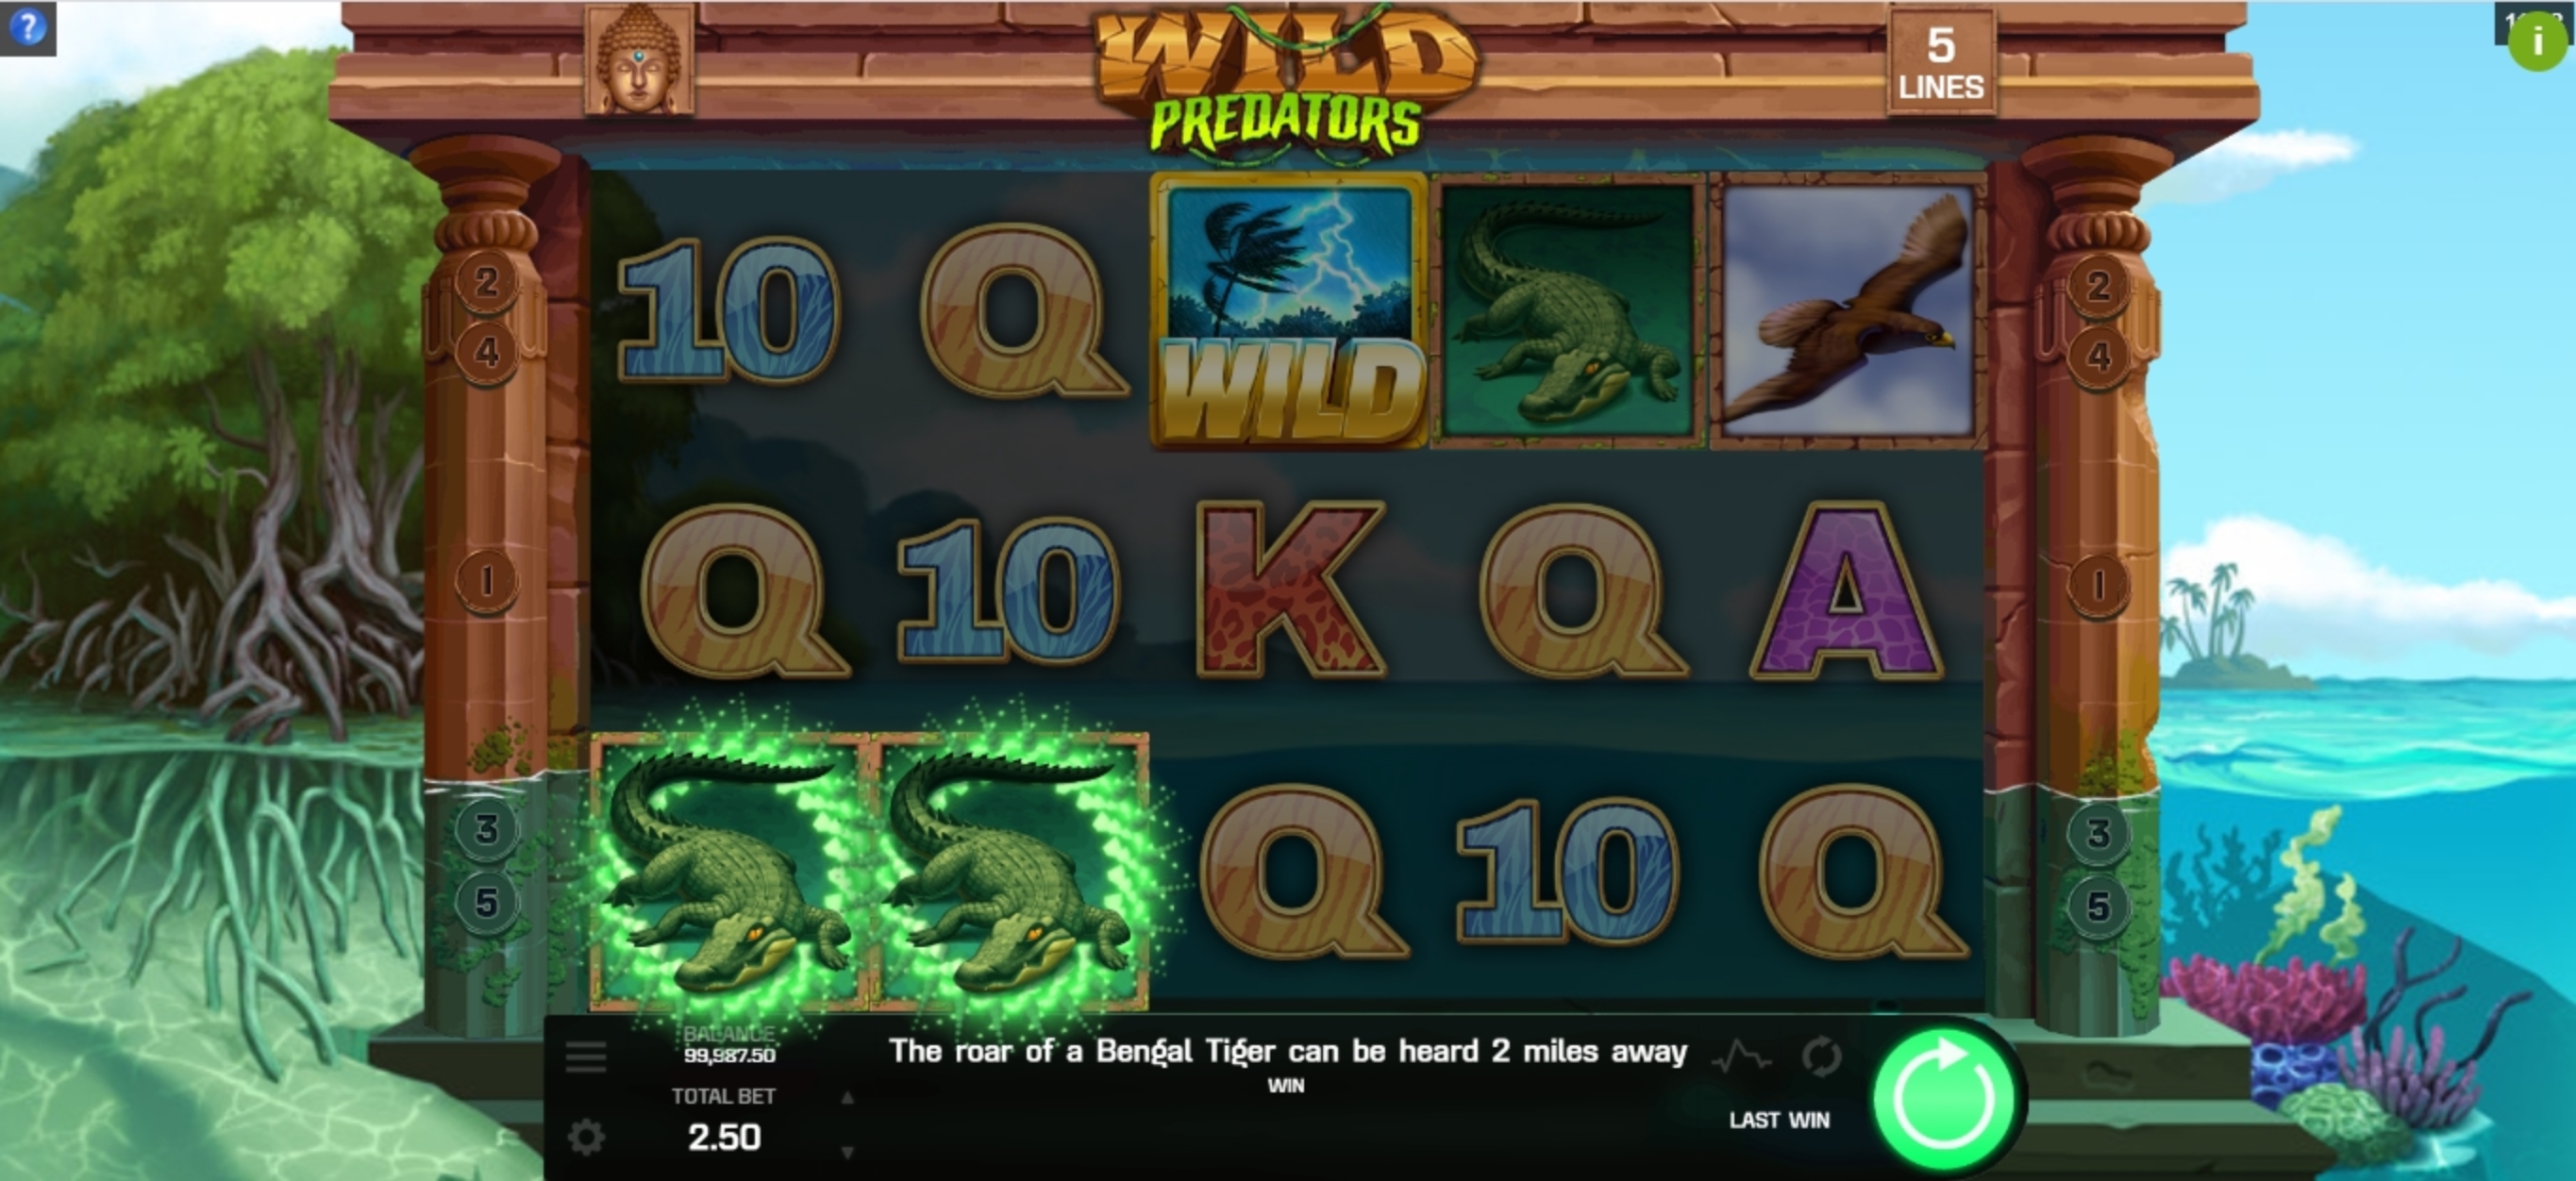 Win Money in Wild Predators Free Slot Game by Golden Rock Studios